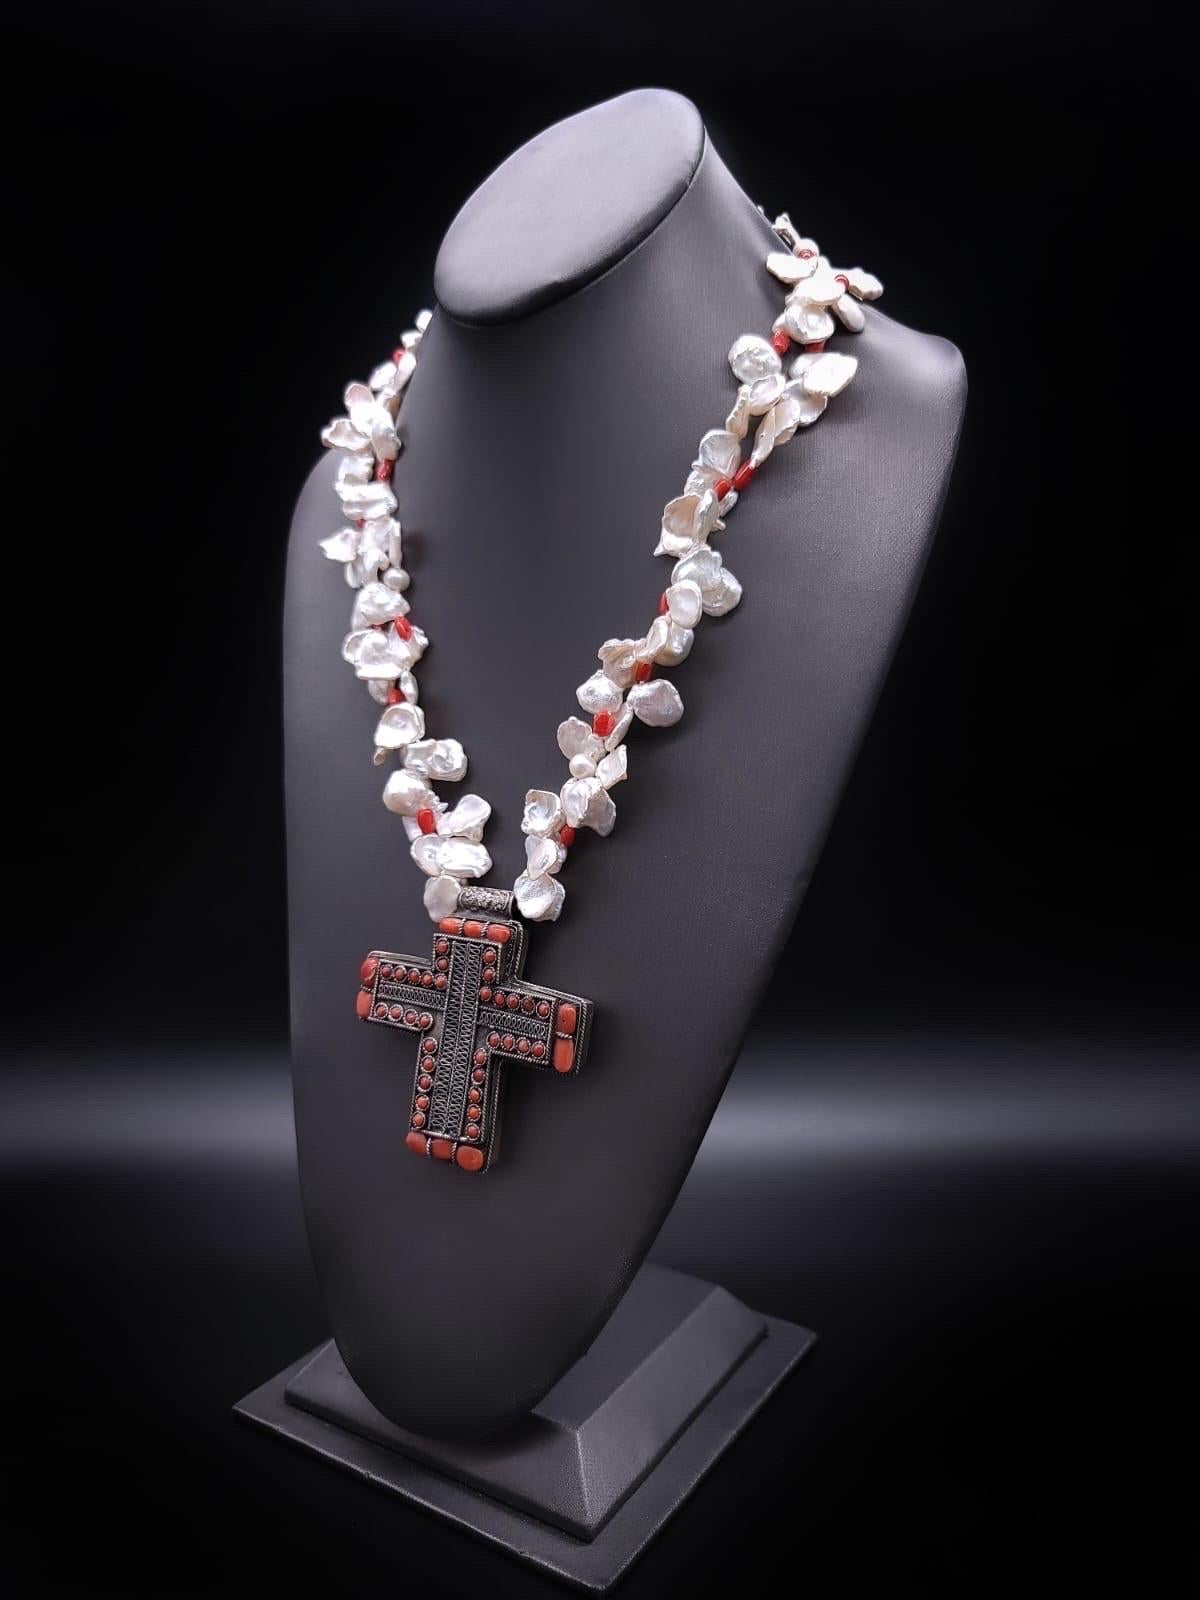 Unique en son genre

Voici un superbe collier de perles keshi à deux brins, délicatement confectionné avec des intercalaires en corail italien qui ajoutent une touche d'élégance. Le point central du collier est une croix en argent fin fabriquée à la